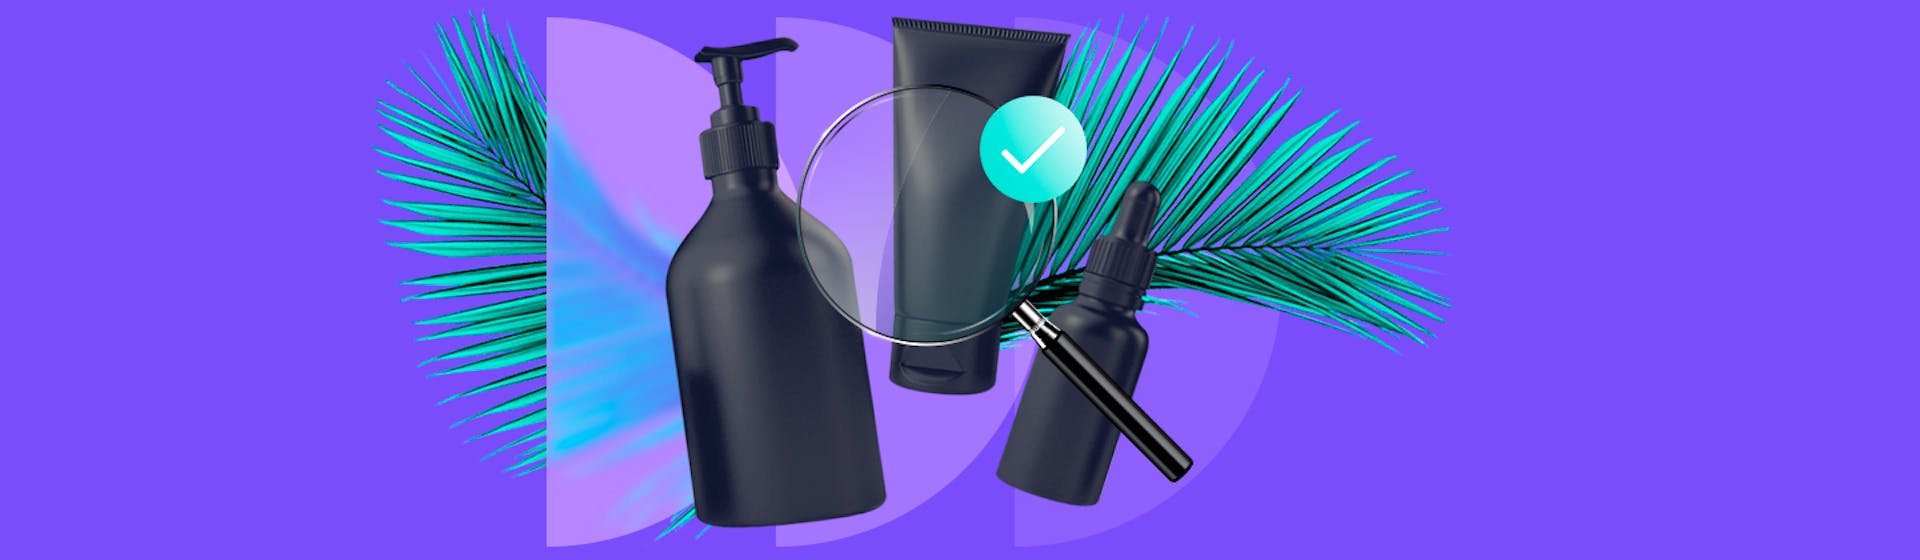 Productos para el cuidado de la piel: ¡adquiere los artículos adecuados para lucir un cutis radiante!